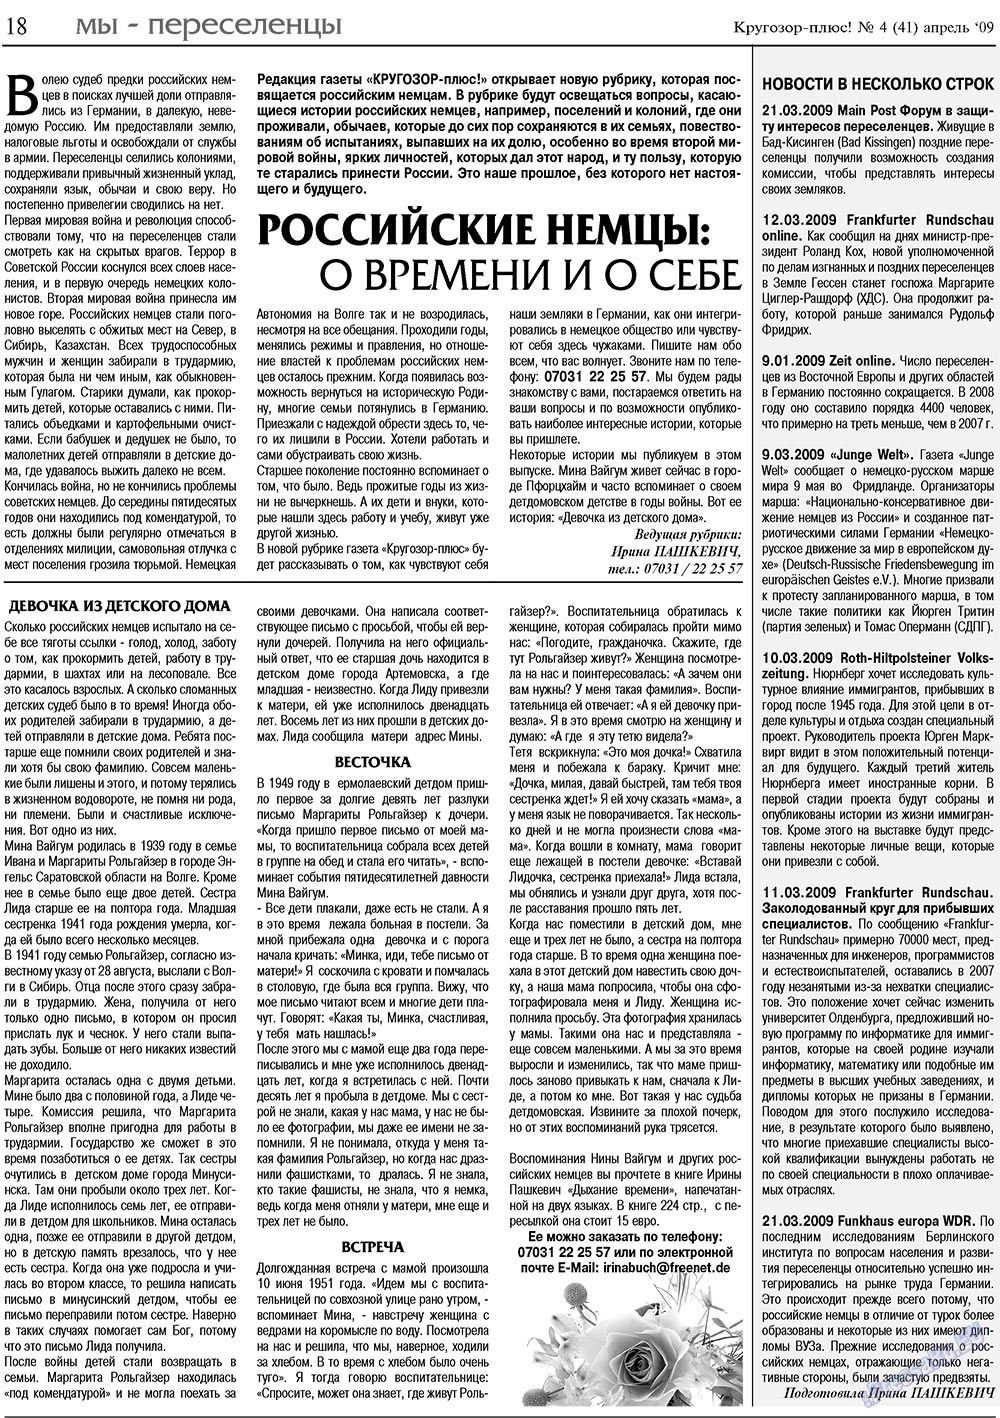 Кругозор плюс!, газета. 2009 №4 стр.18